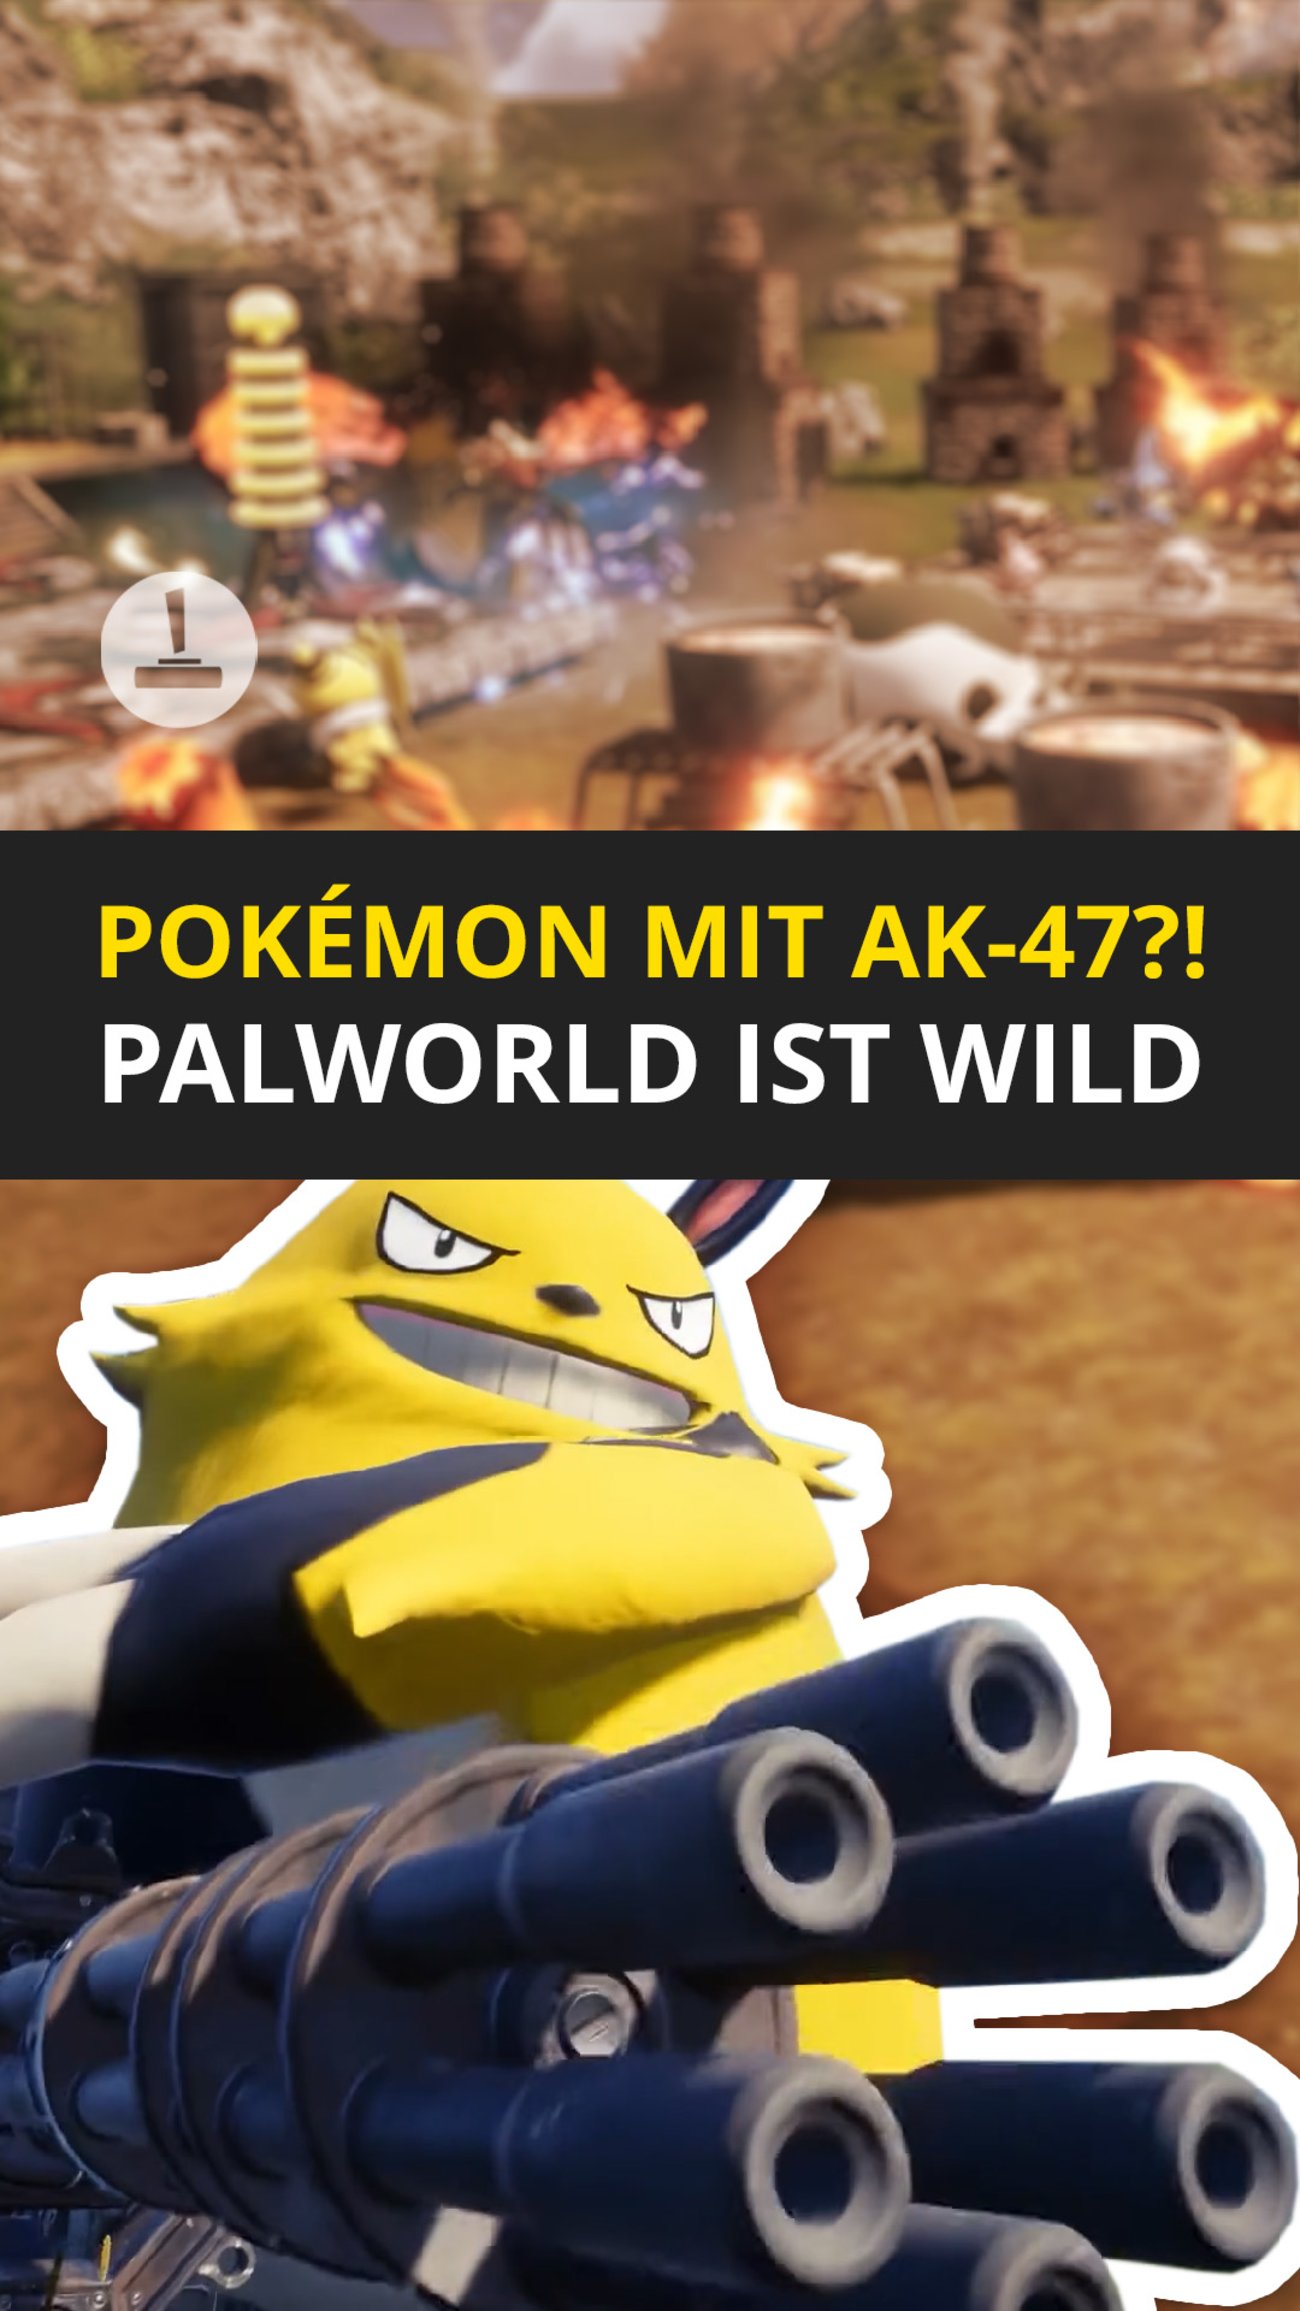 Palworld: Wie Pokémon, aber mit schweren Geschützen